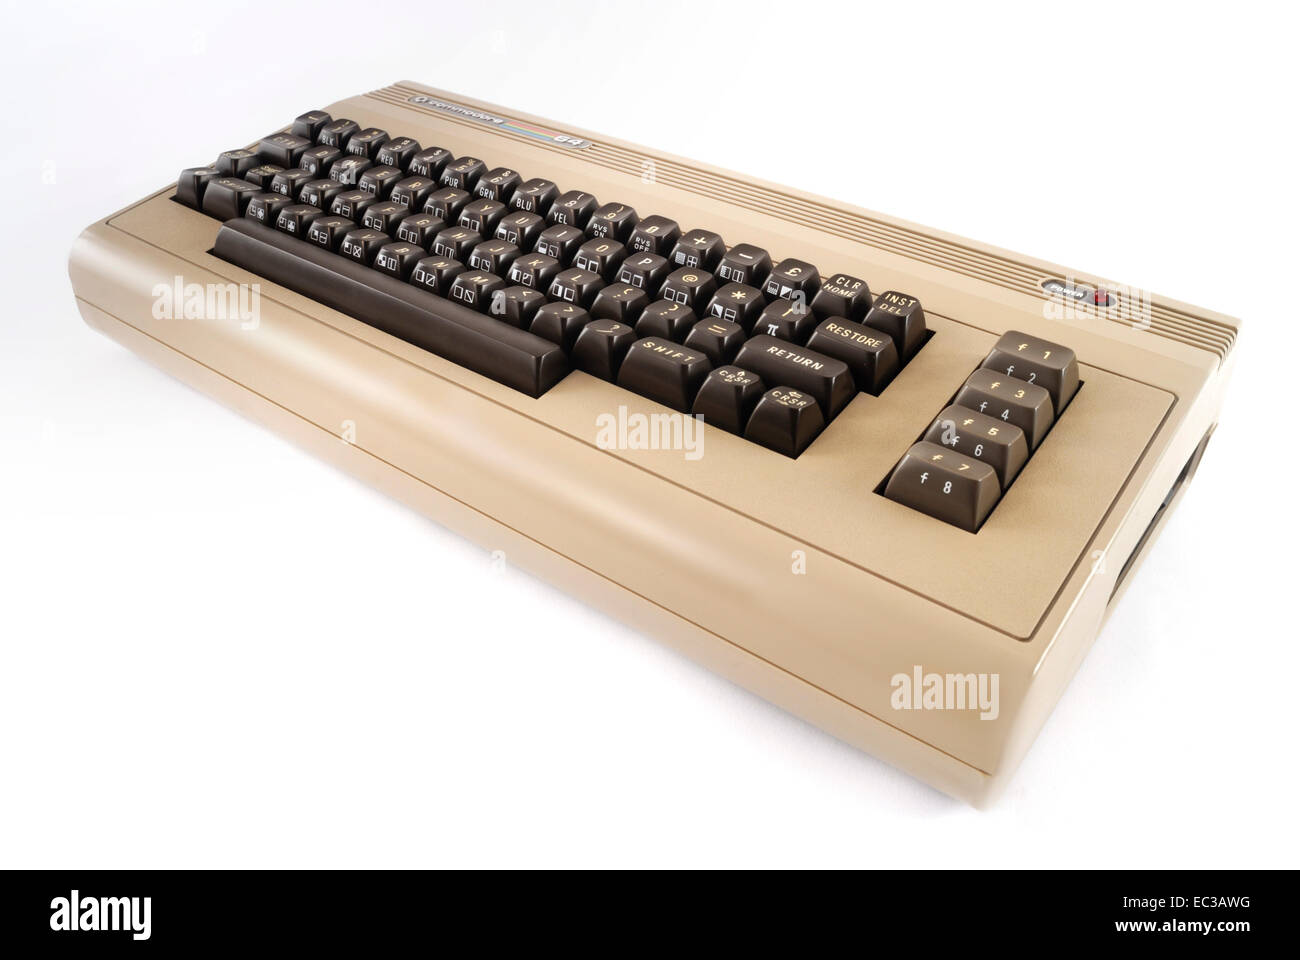 Commodore C64, 64er, 8 Bit Homecomputer, 1986 Stock Photo